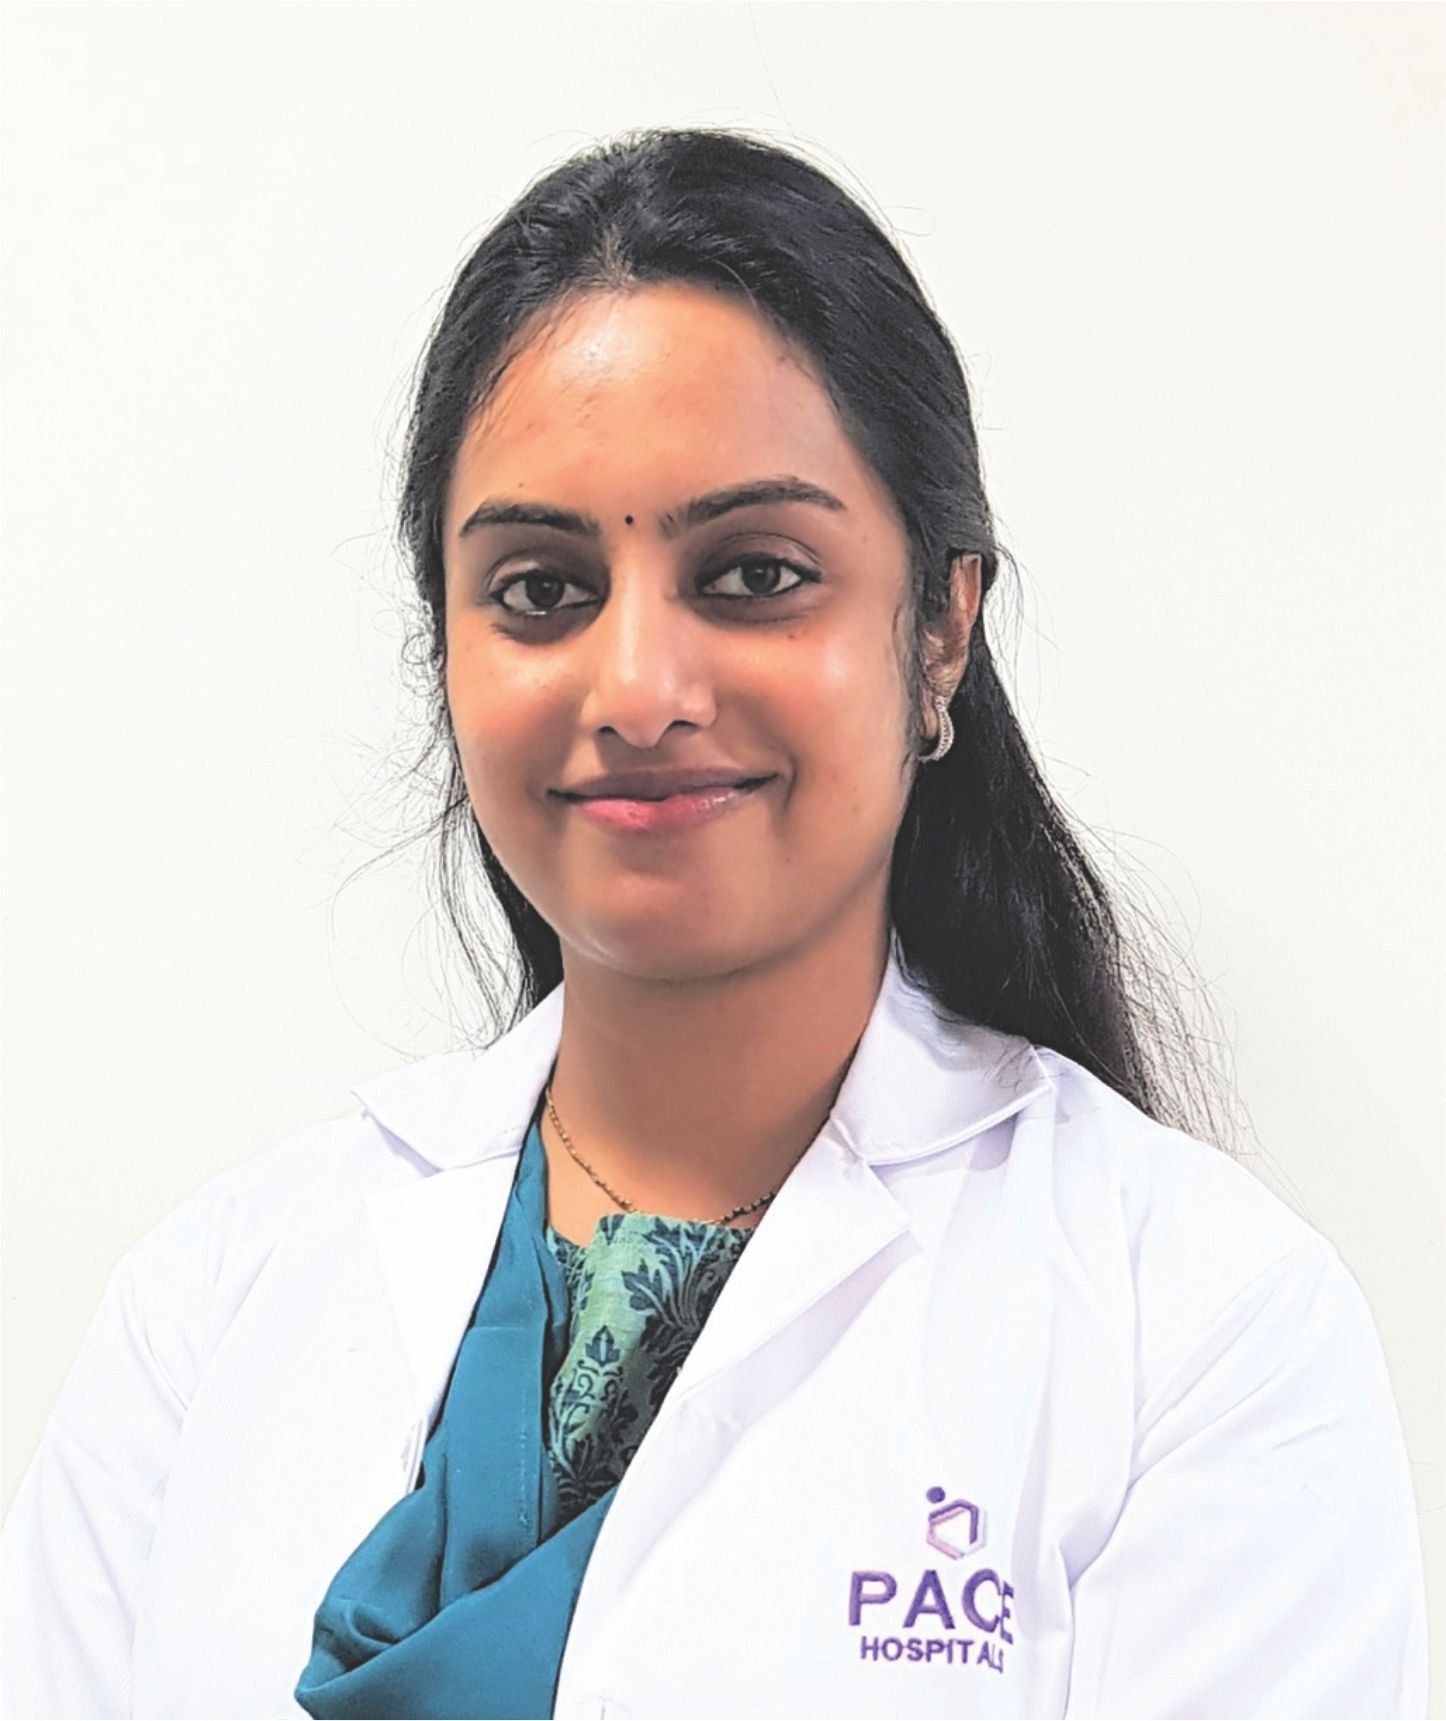 Dr Pravallika Dutta - Best Neurologist in Hyderabad - Specialist in Epilepsy, Stroke, Neuroimmunology, Headache and Migraine management